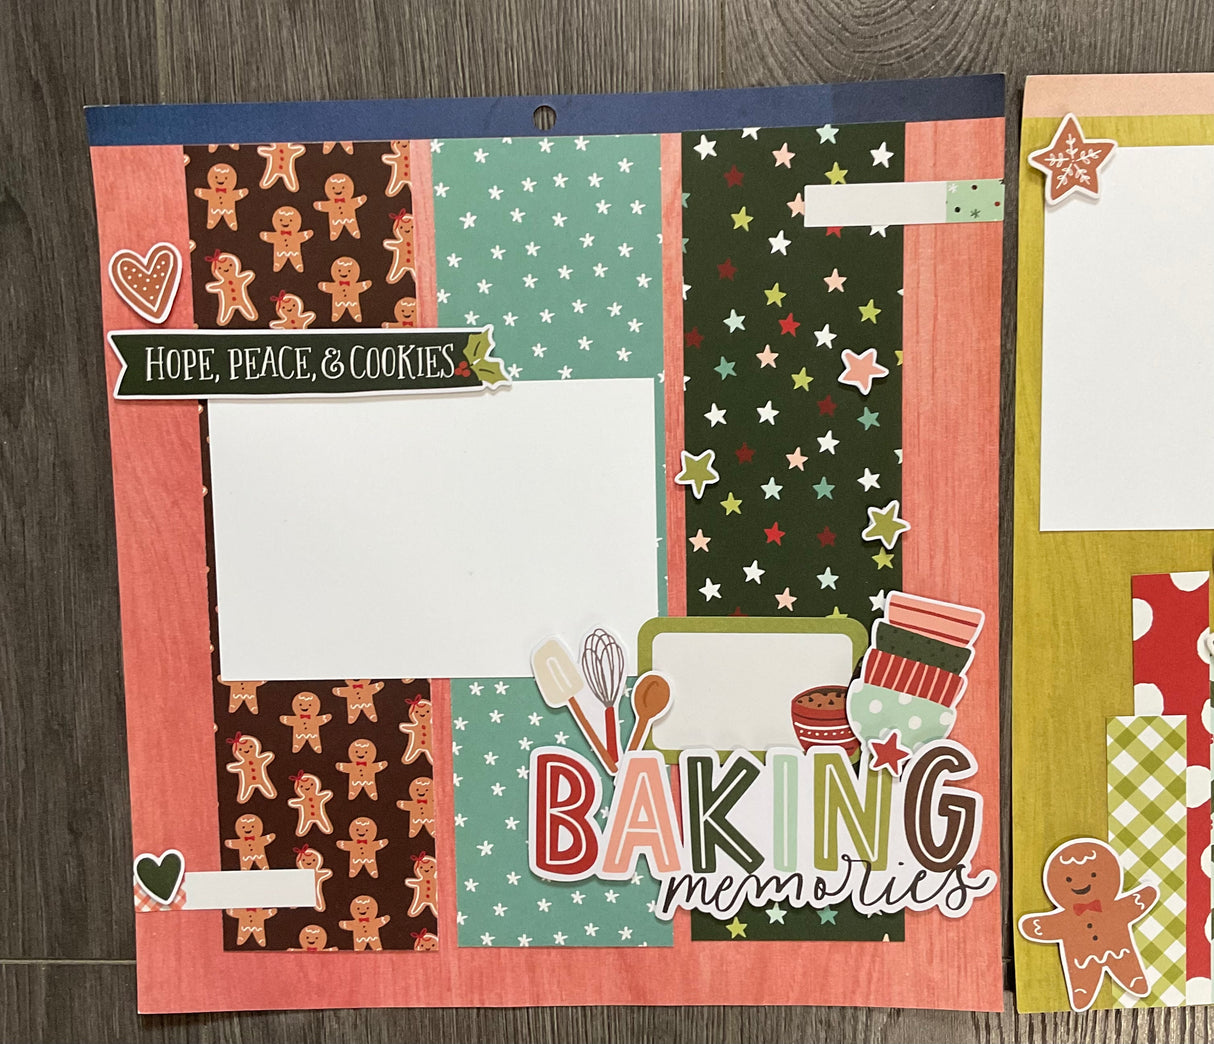 Kit: Page Kit: Jolly Holly Baking Kit